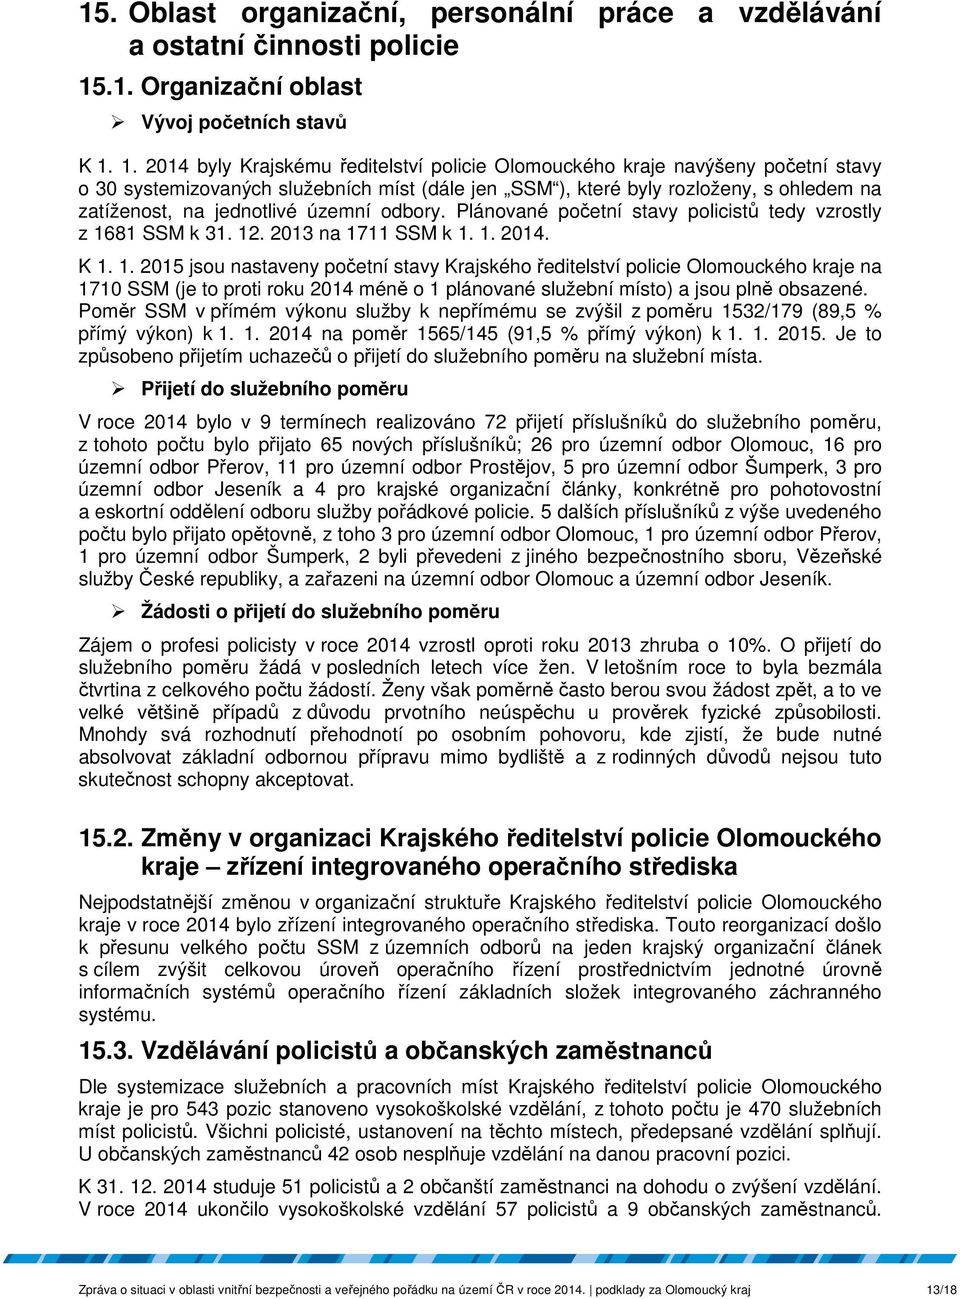 1. 2014 byly Krajskému ředitelství policie Olomouckého kraje navýšeny početní stavy o 30 systemizovaných služebních míst (dále jen SSM ), které byly rozloženy, s ohledem na zatíženost, na jednotlivé